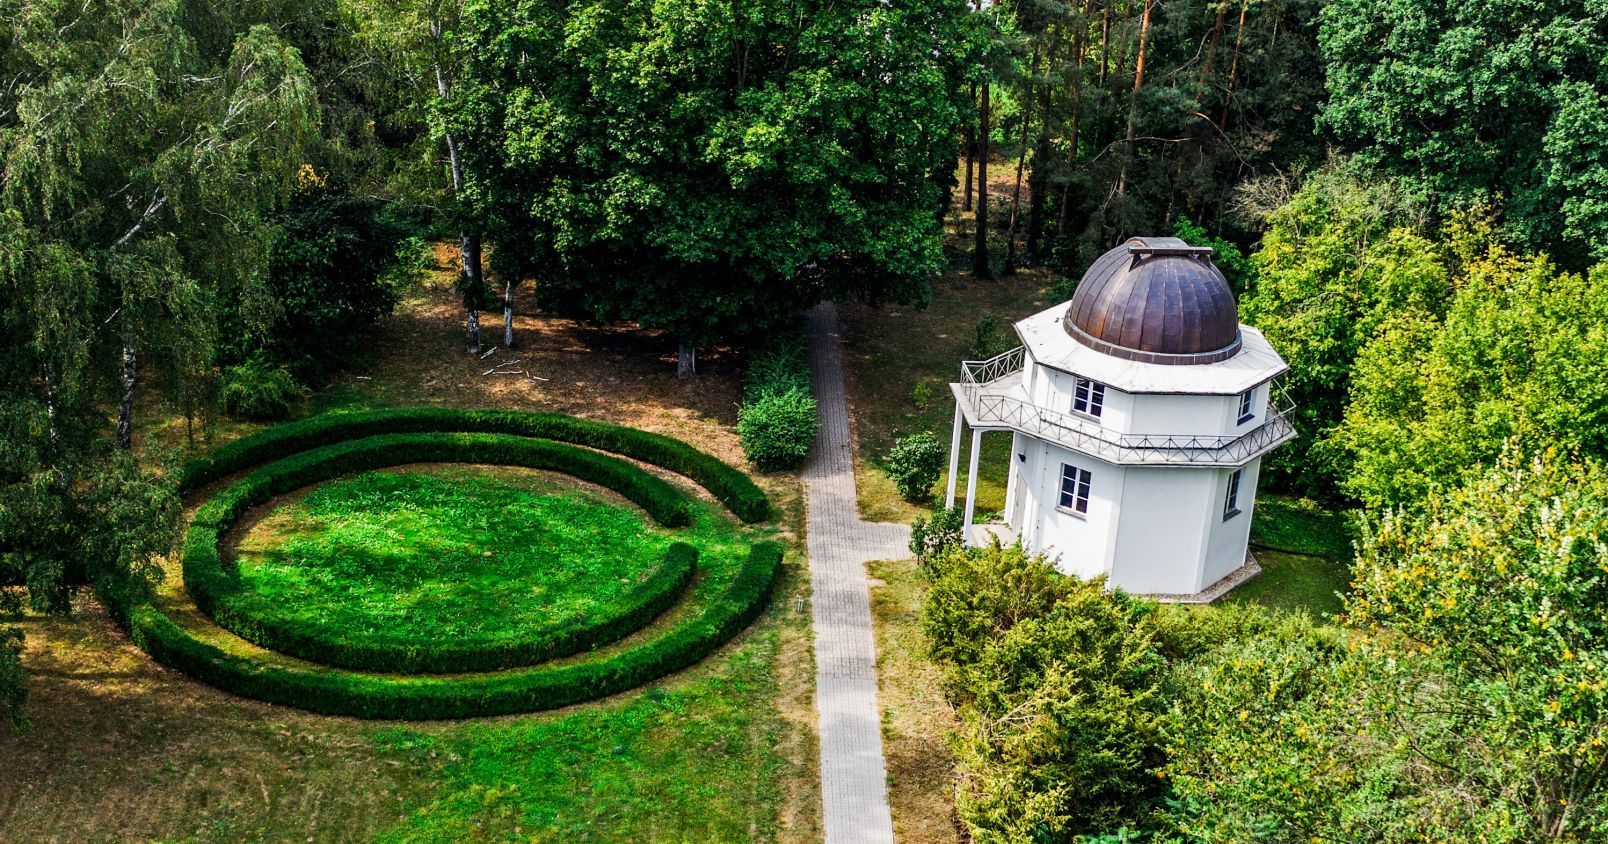 Ośrodek w Piwnicach wyraźnie nawiązuje do sięgającej końca XVIII w. tradycji zakładania obserwatoriów w otoczeniu ogrodów botanicznych